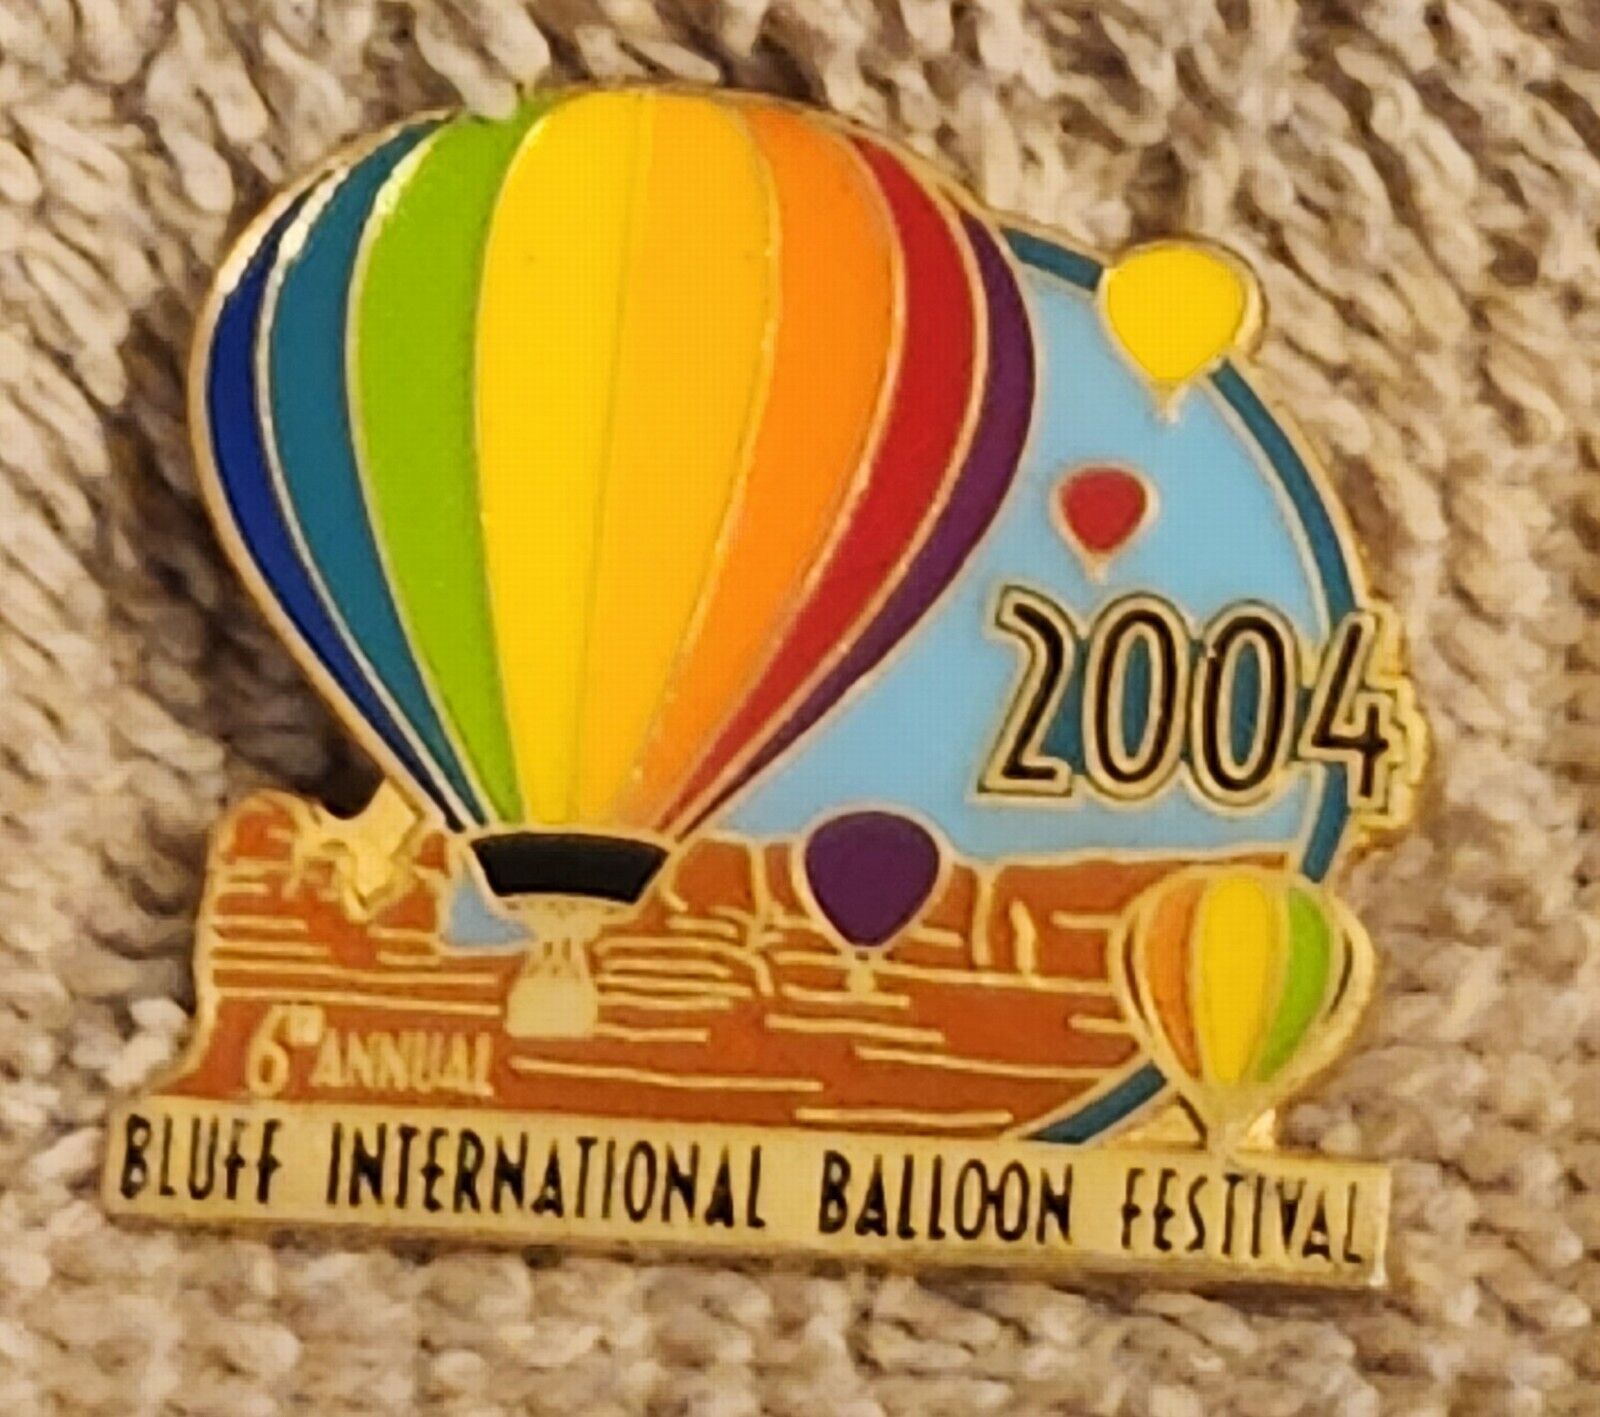 2004 6TH ANNUAL BLUFF INTERNATIONAL BALLOON FESTIVAL BALLOON PIN